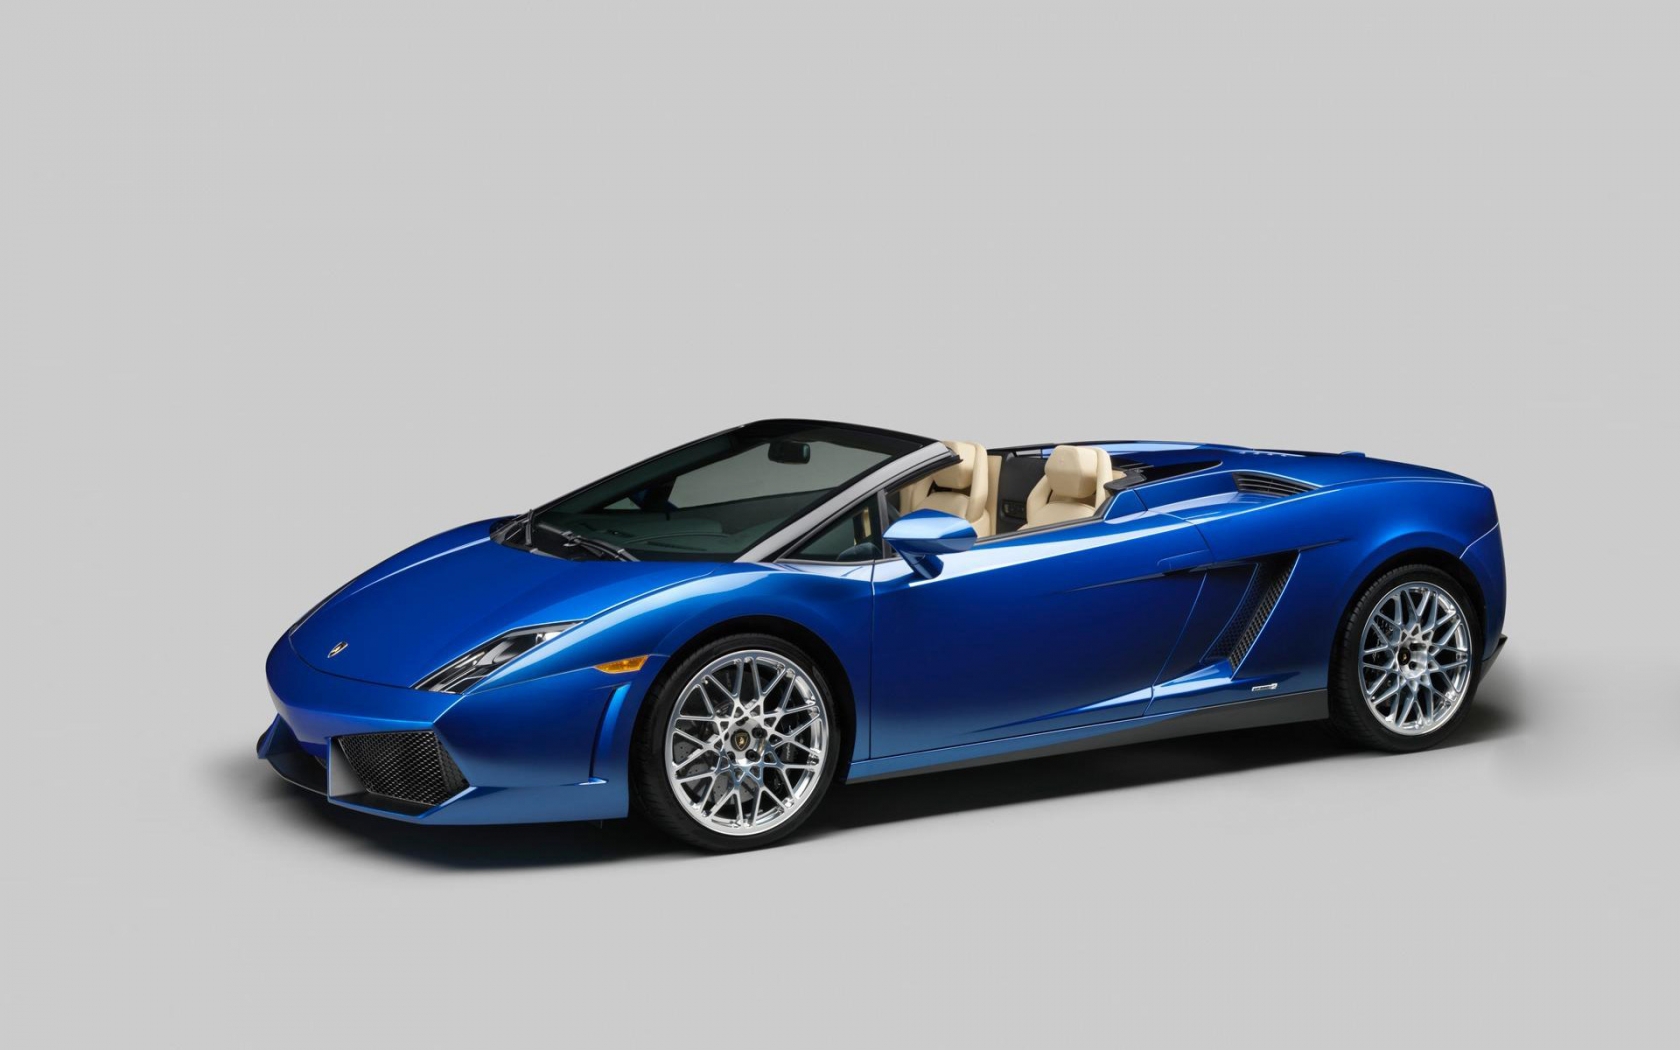 2012 Lamborghini Gallardo LP550 Spyder for 1680 x 1050 widescreen resolution